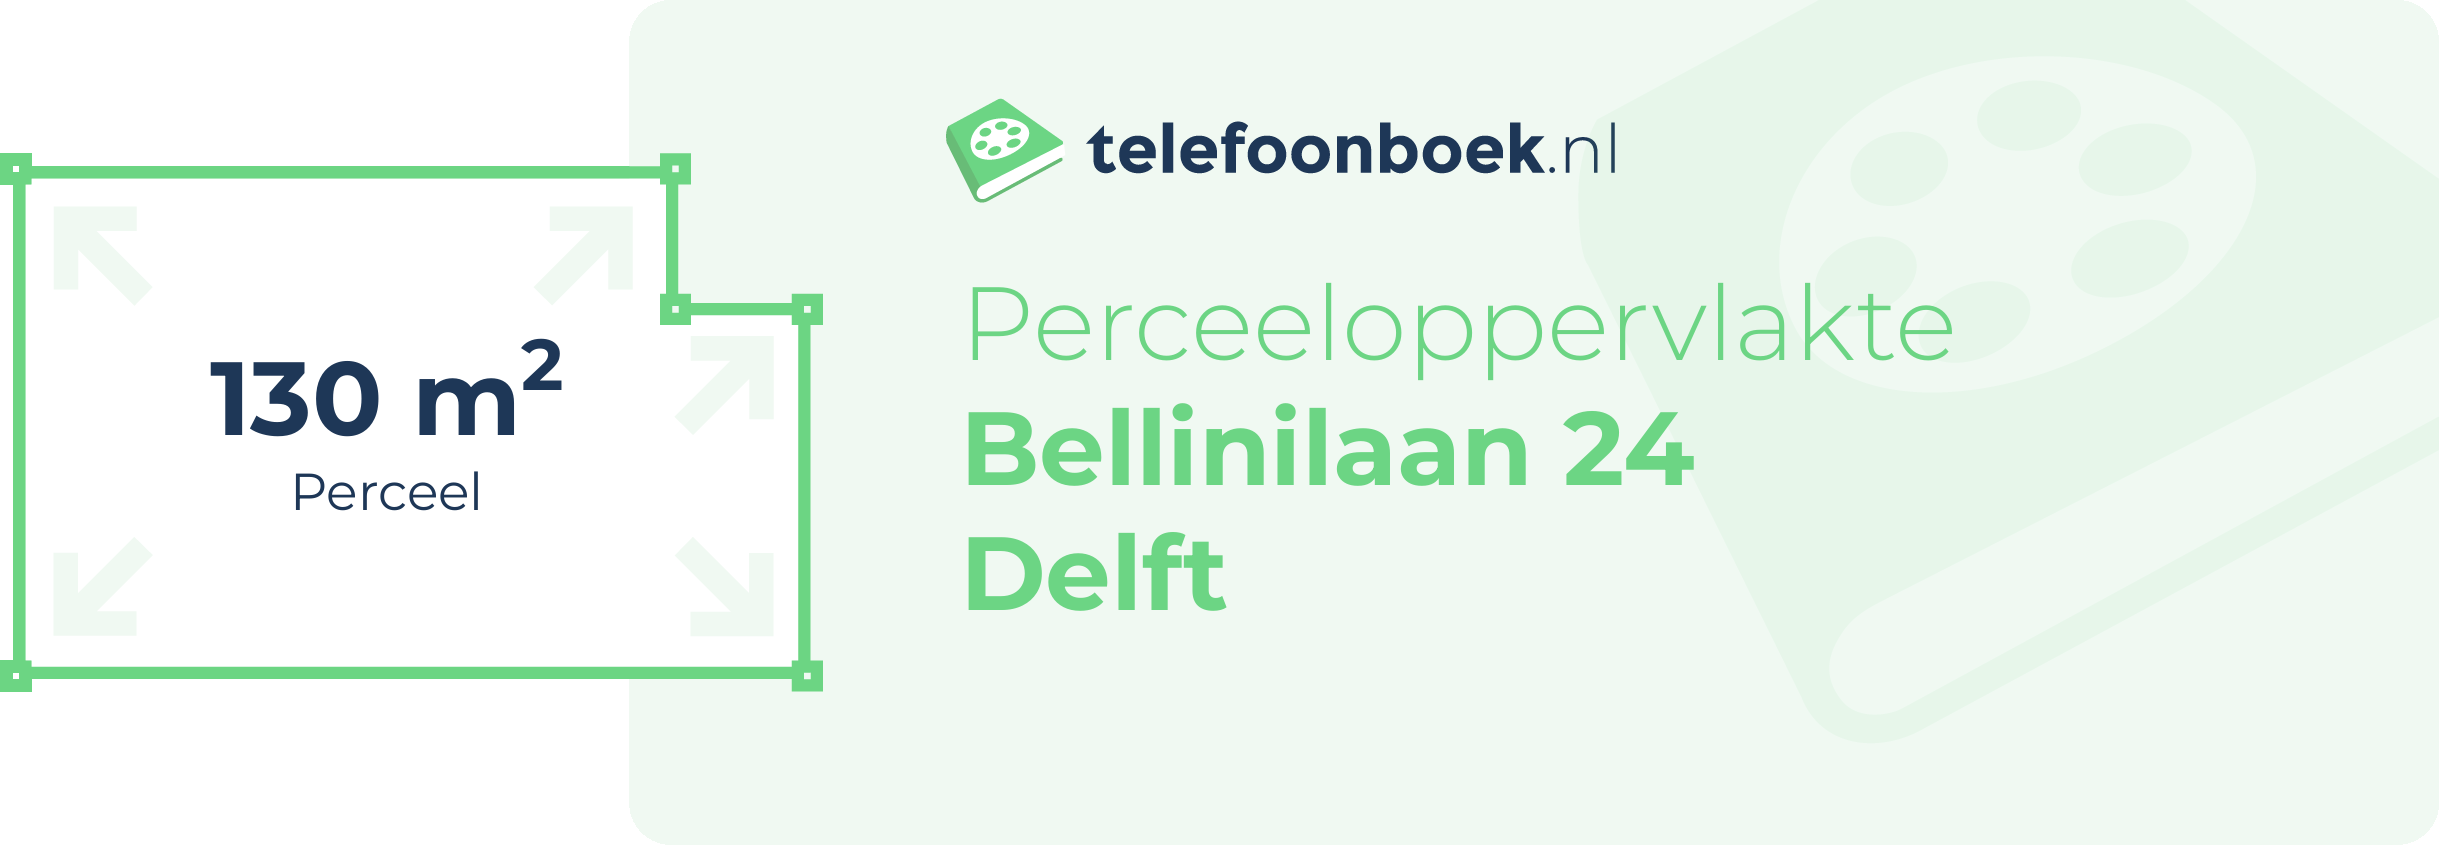 Perceeloppervlakte Bellinilaan 24 Delft